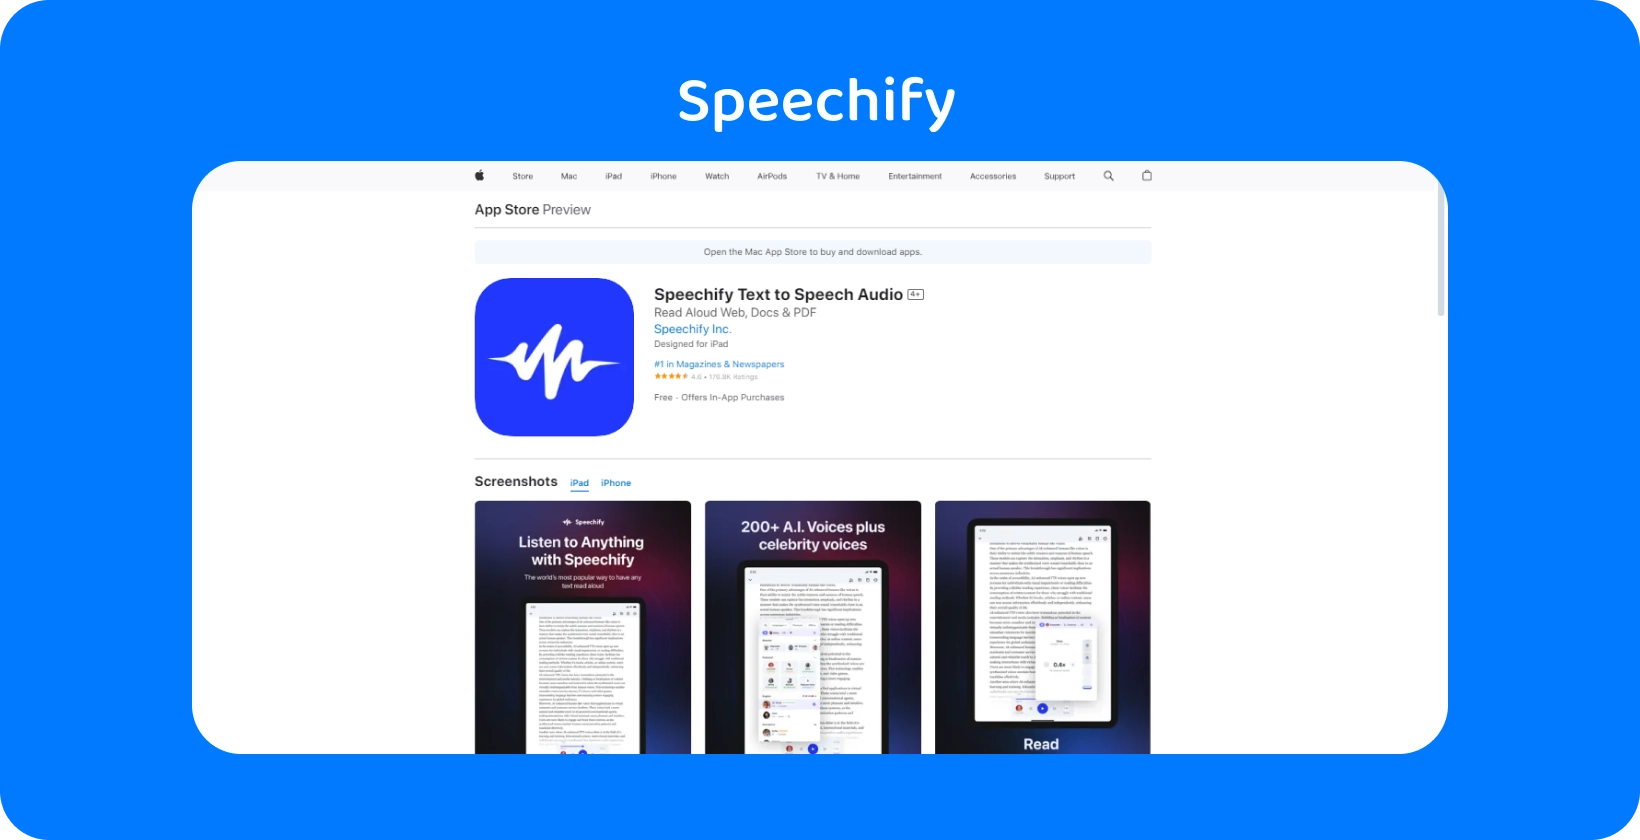 L'app Speechify nell'App Store, che mostra le funzionalità per convertire il testo in voce con varie opzioni vocali.